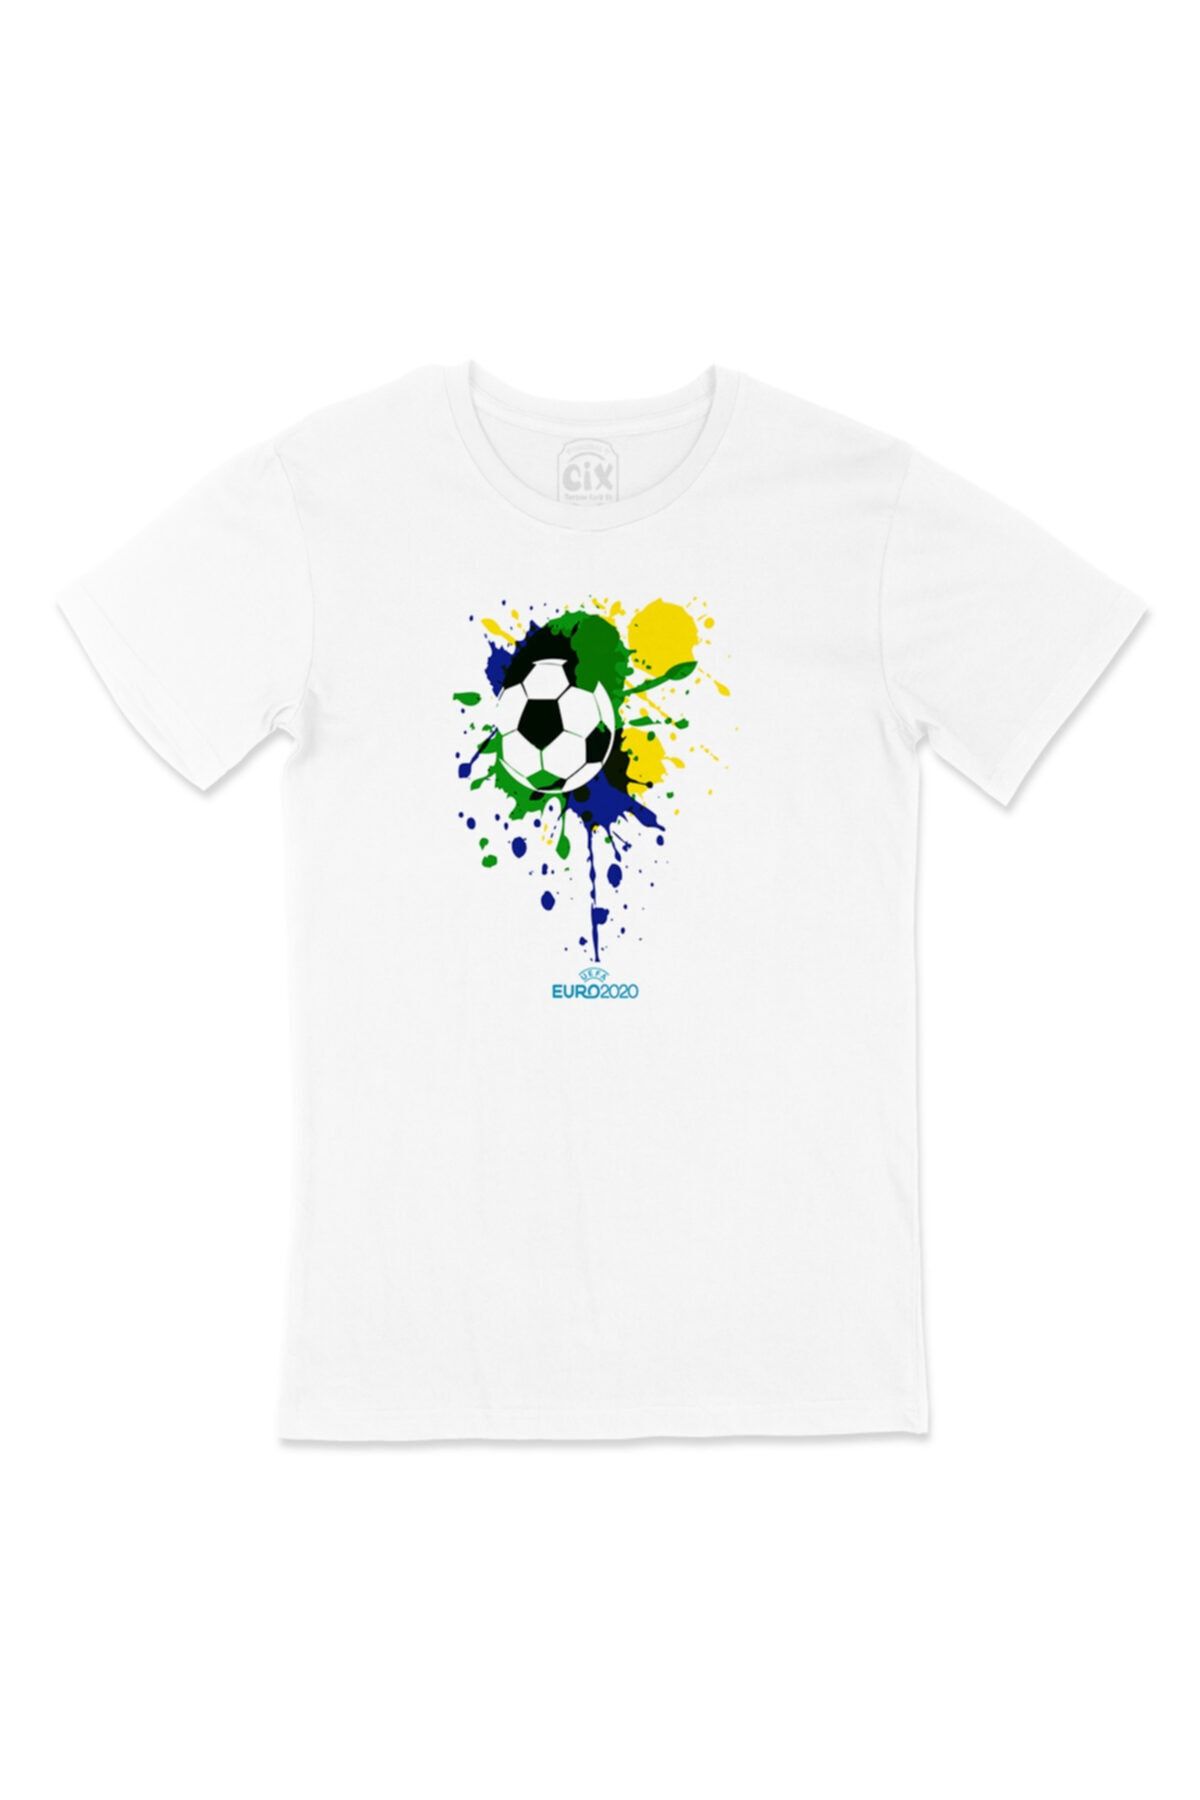 Cix Euro 2020 Futbol Topu Cep Logo Tasarımlı Beyaz Tişört